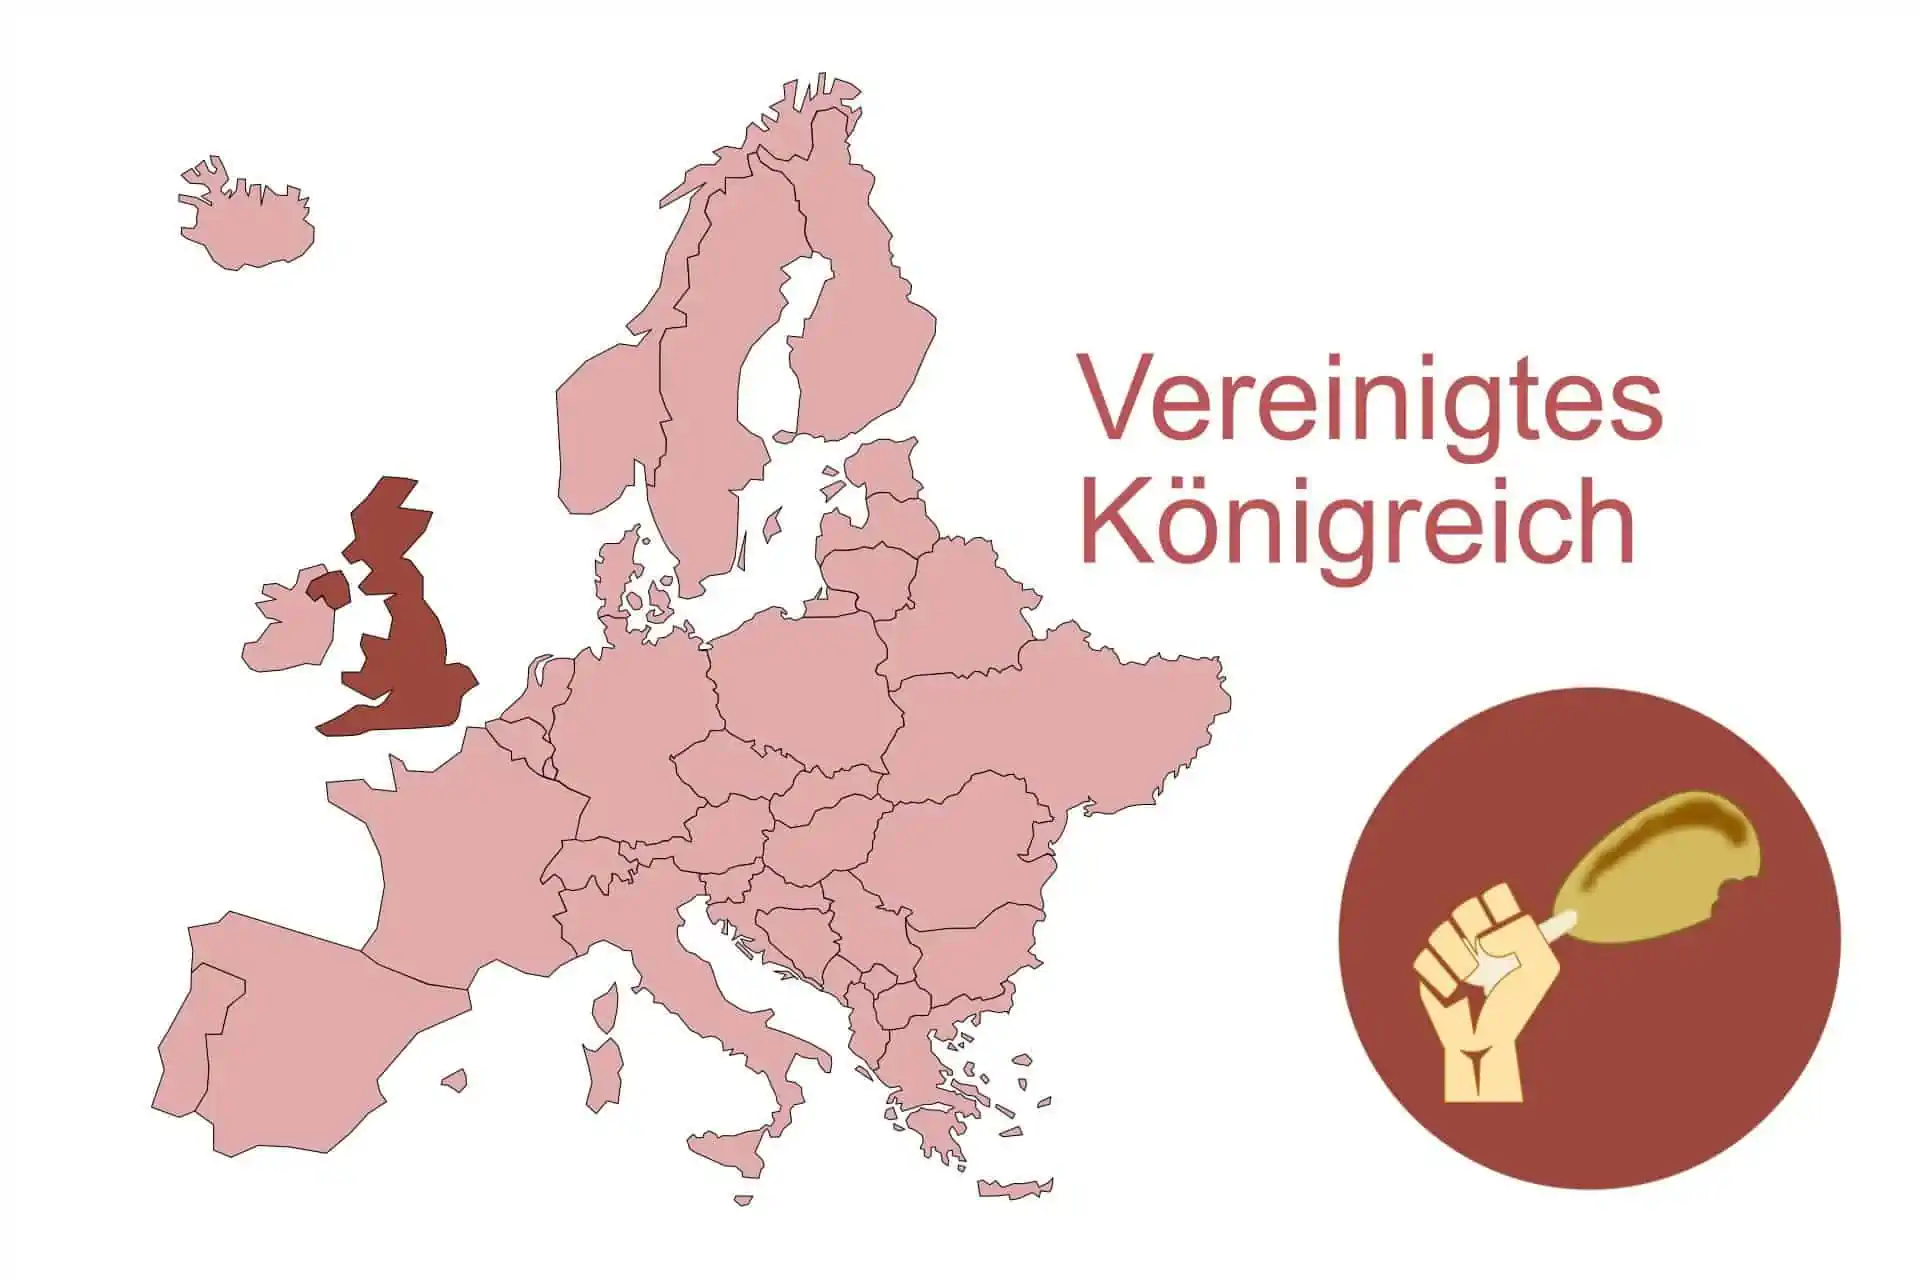 Vereinigtes Koenigreich Fleischersatz Produkte | Fleischersatz-Produkte.de